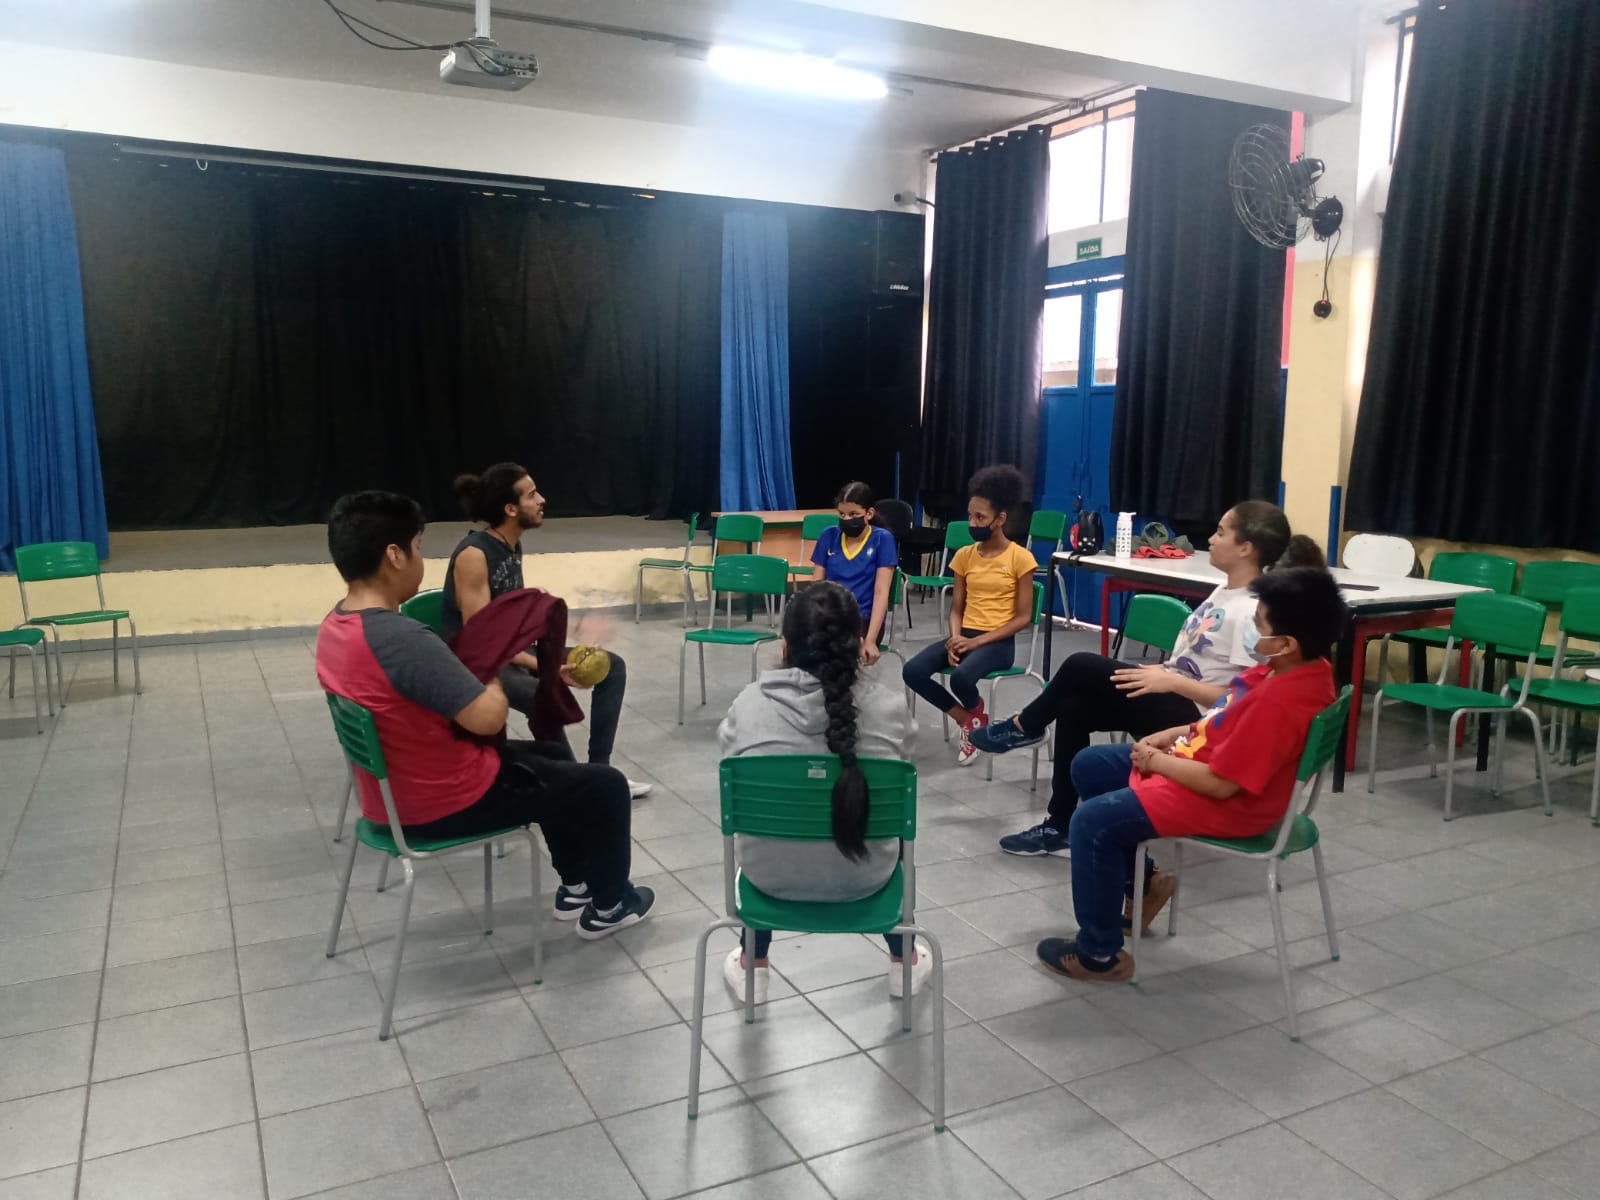 Fotografia colorida mostrando os participantes da oficina de jogos teatrais sentados em círculo, em uma das salas da E.E. Frei Paulo Luig